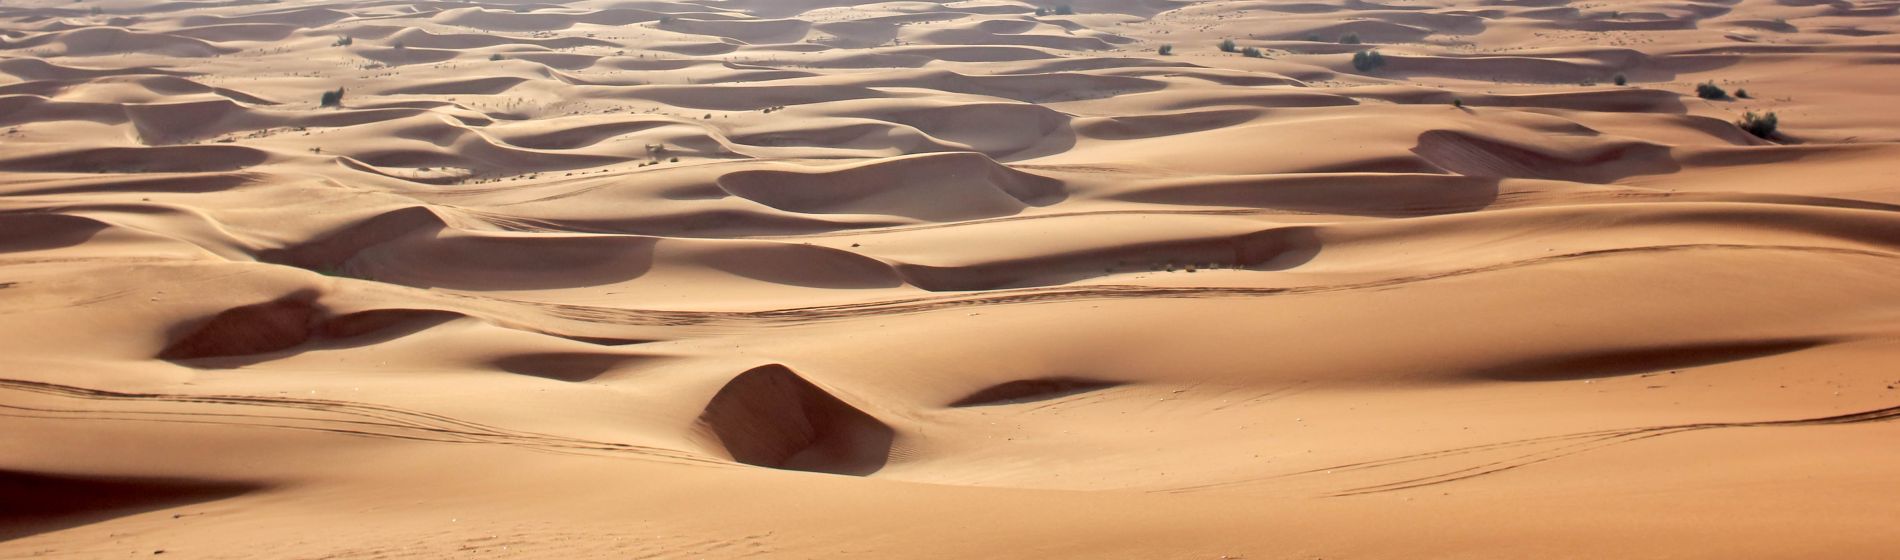 sand_dunes_in_the_desert..jpg